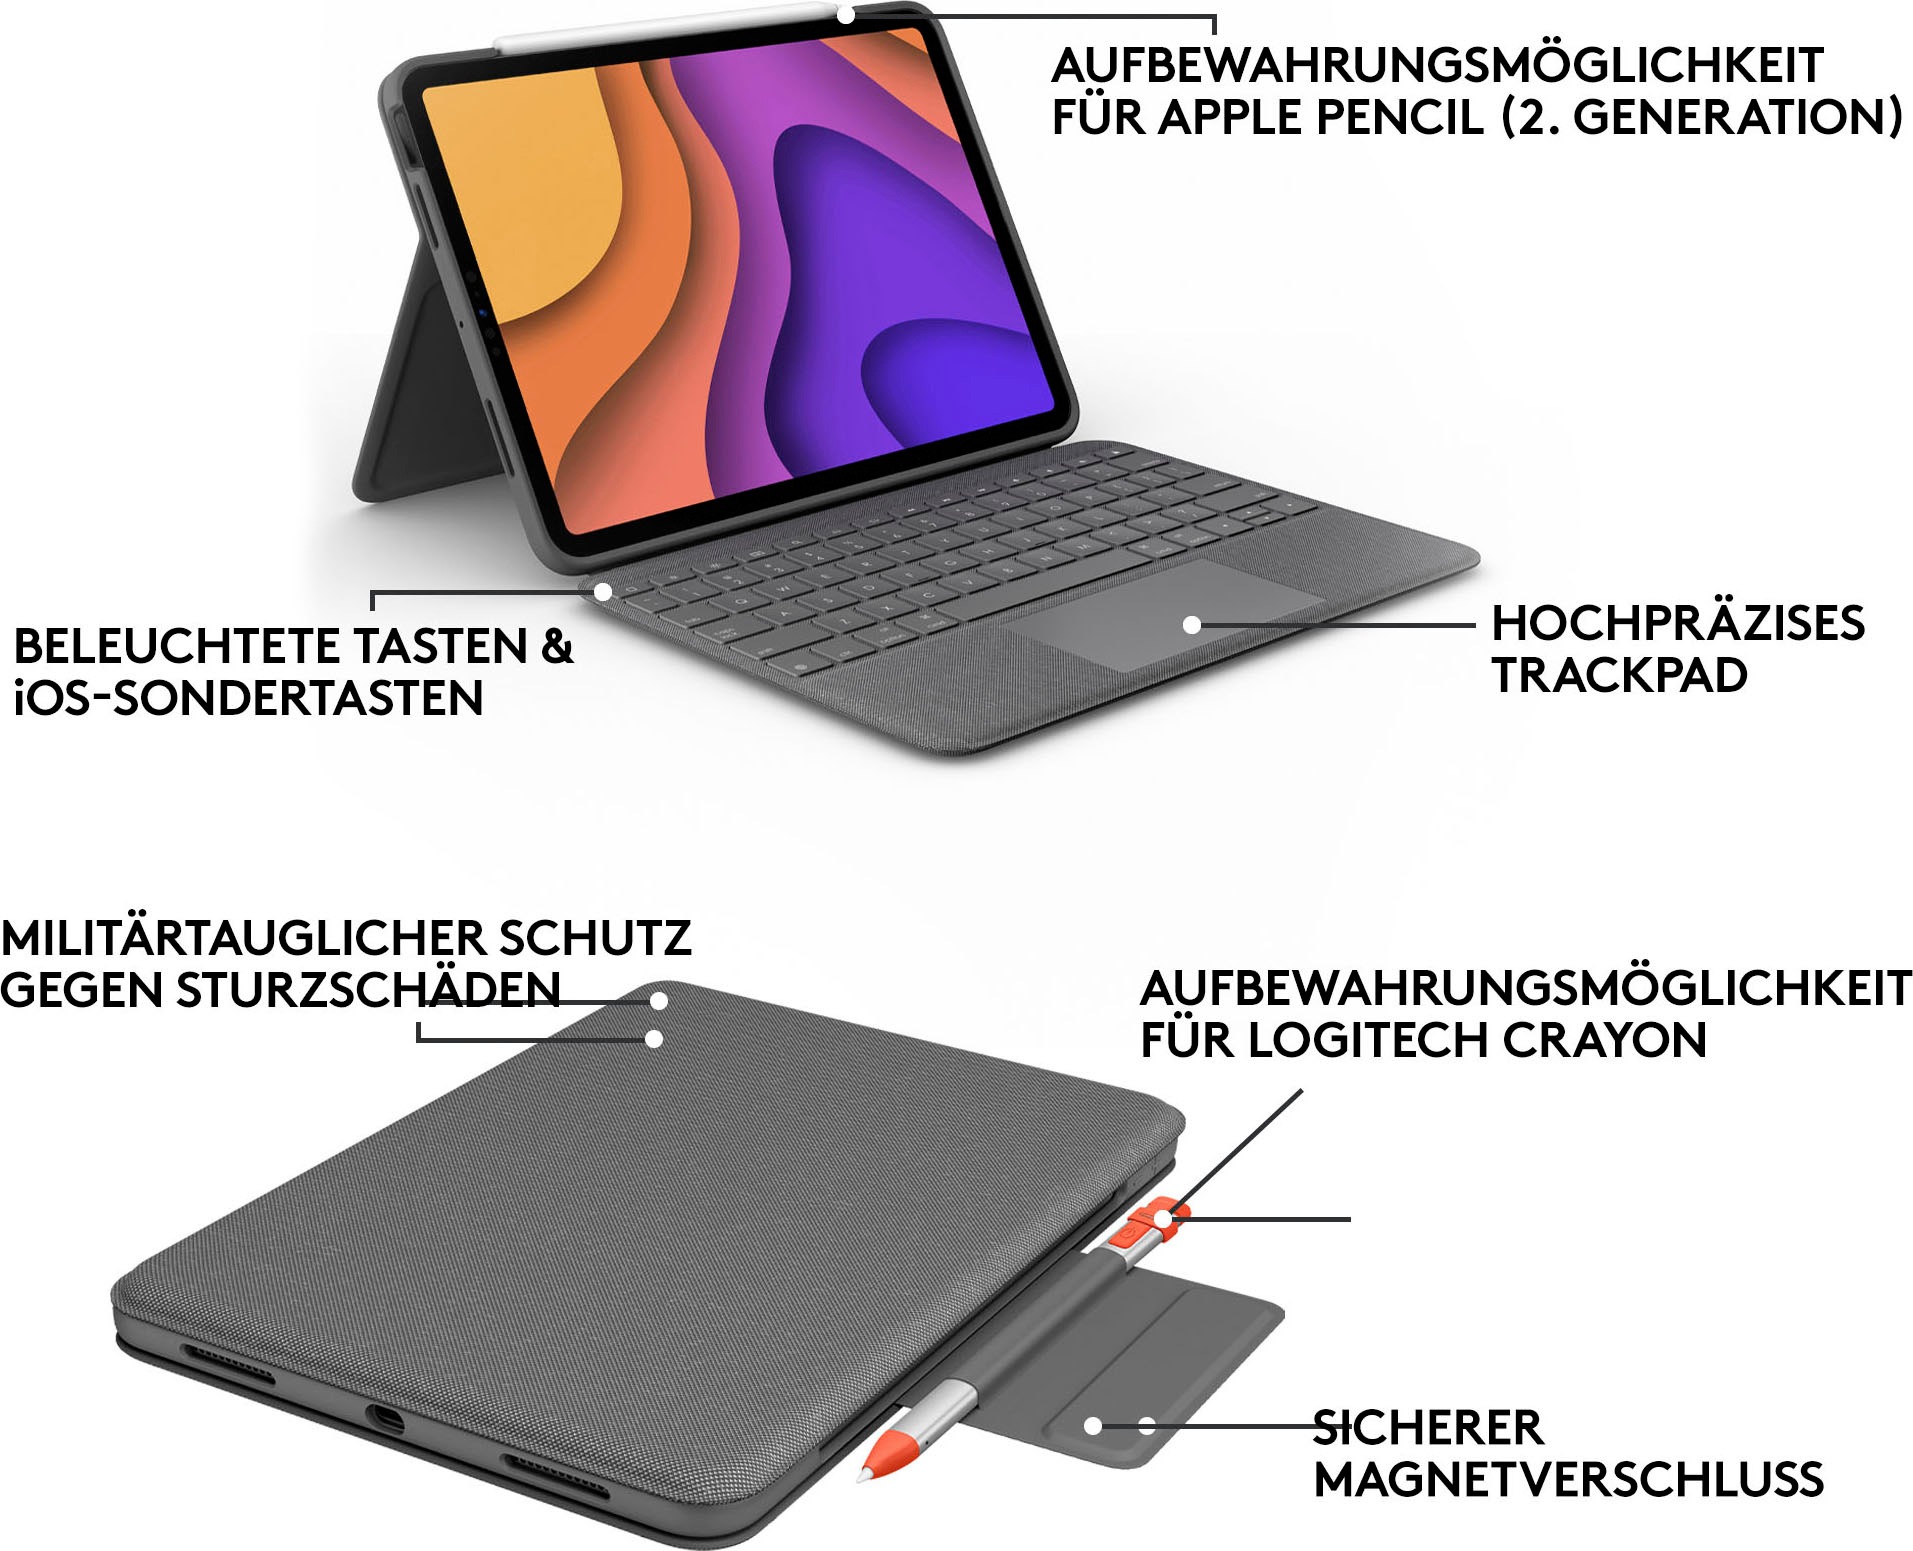 Logitech iPad-Tastatur »Folio Touch iPad Hülle«, (Touchpad)